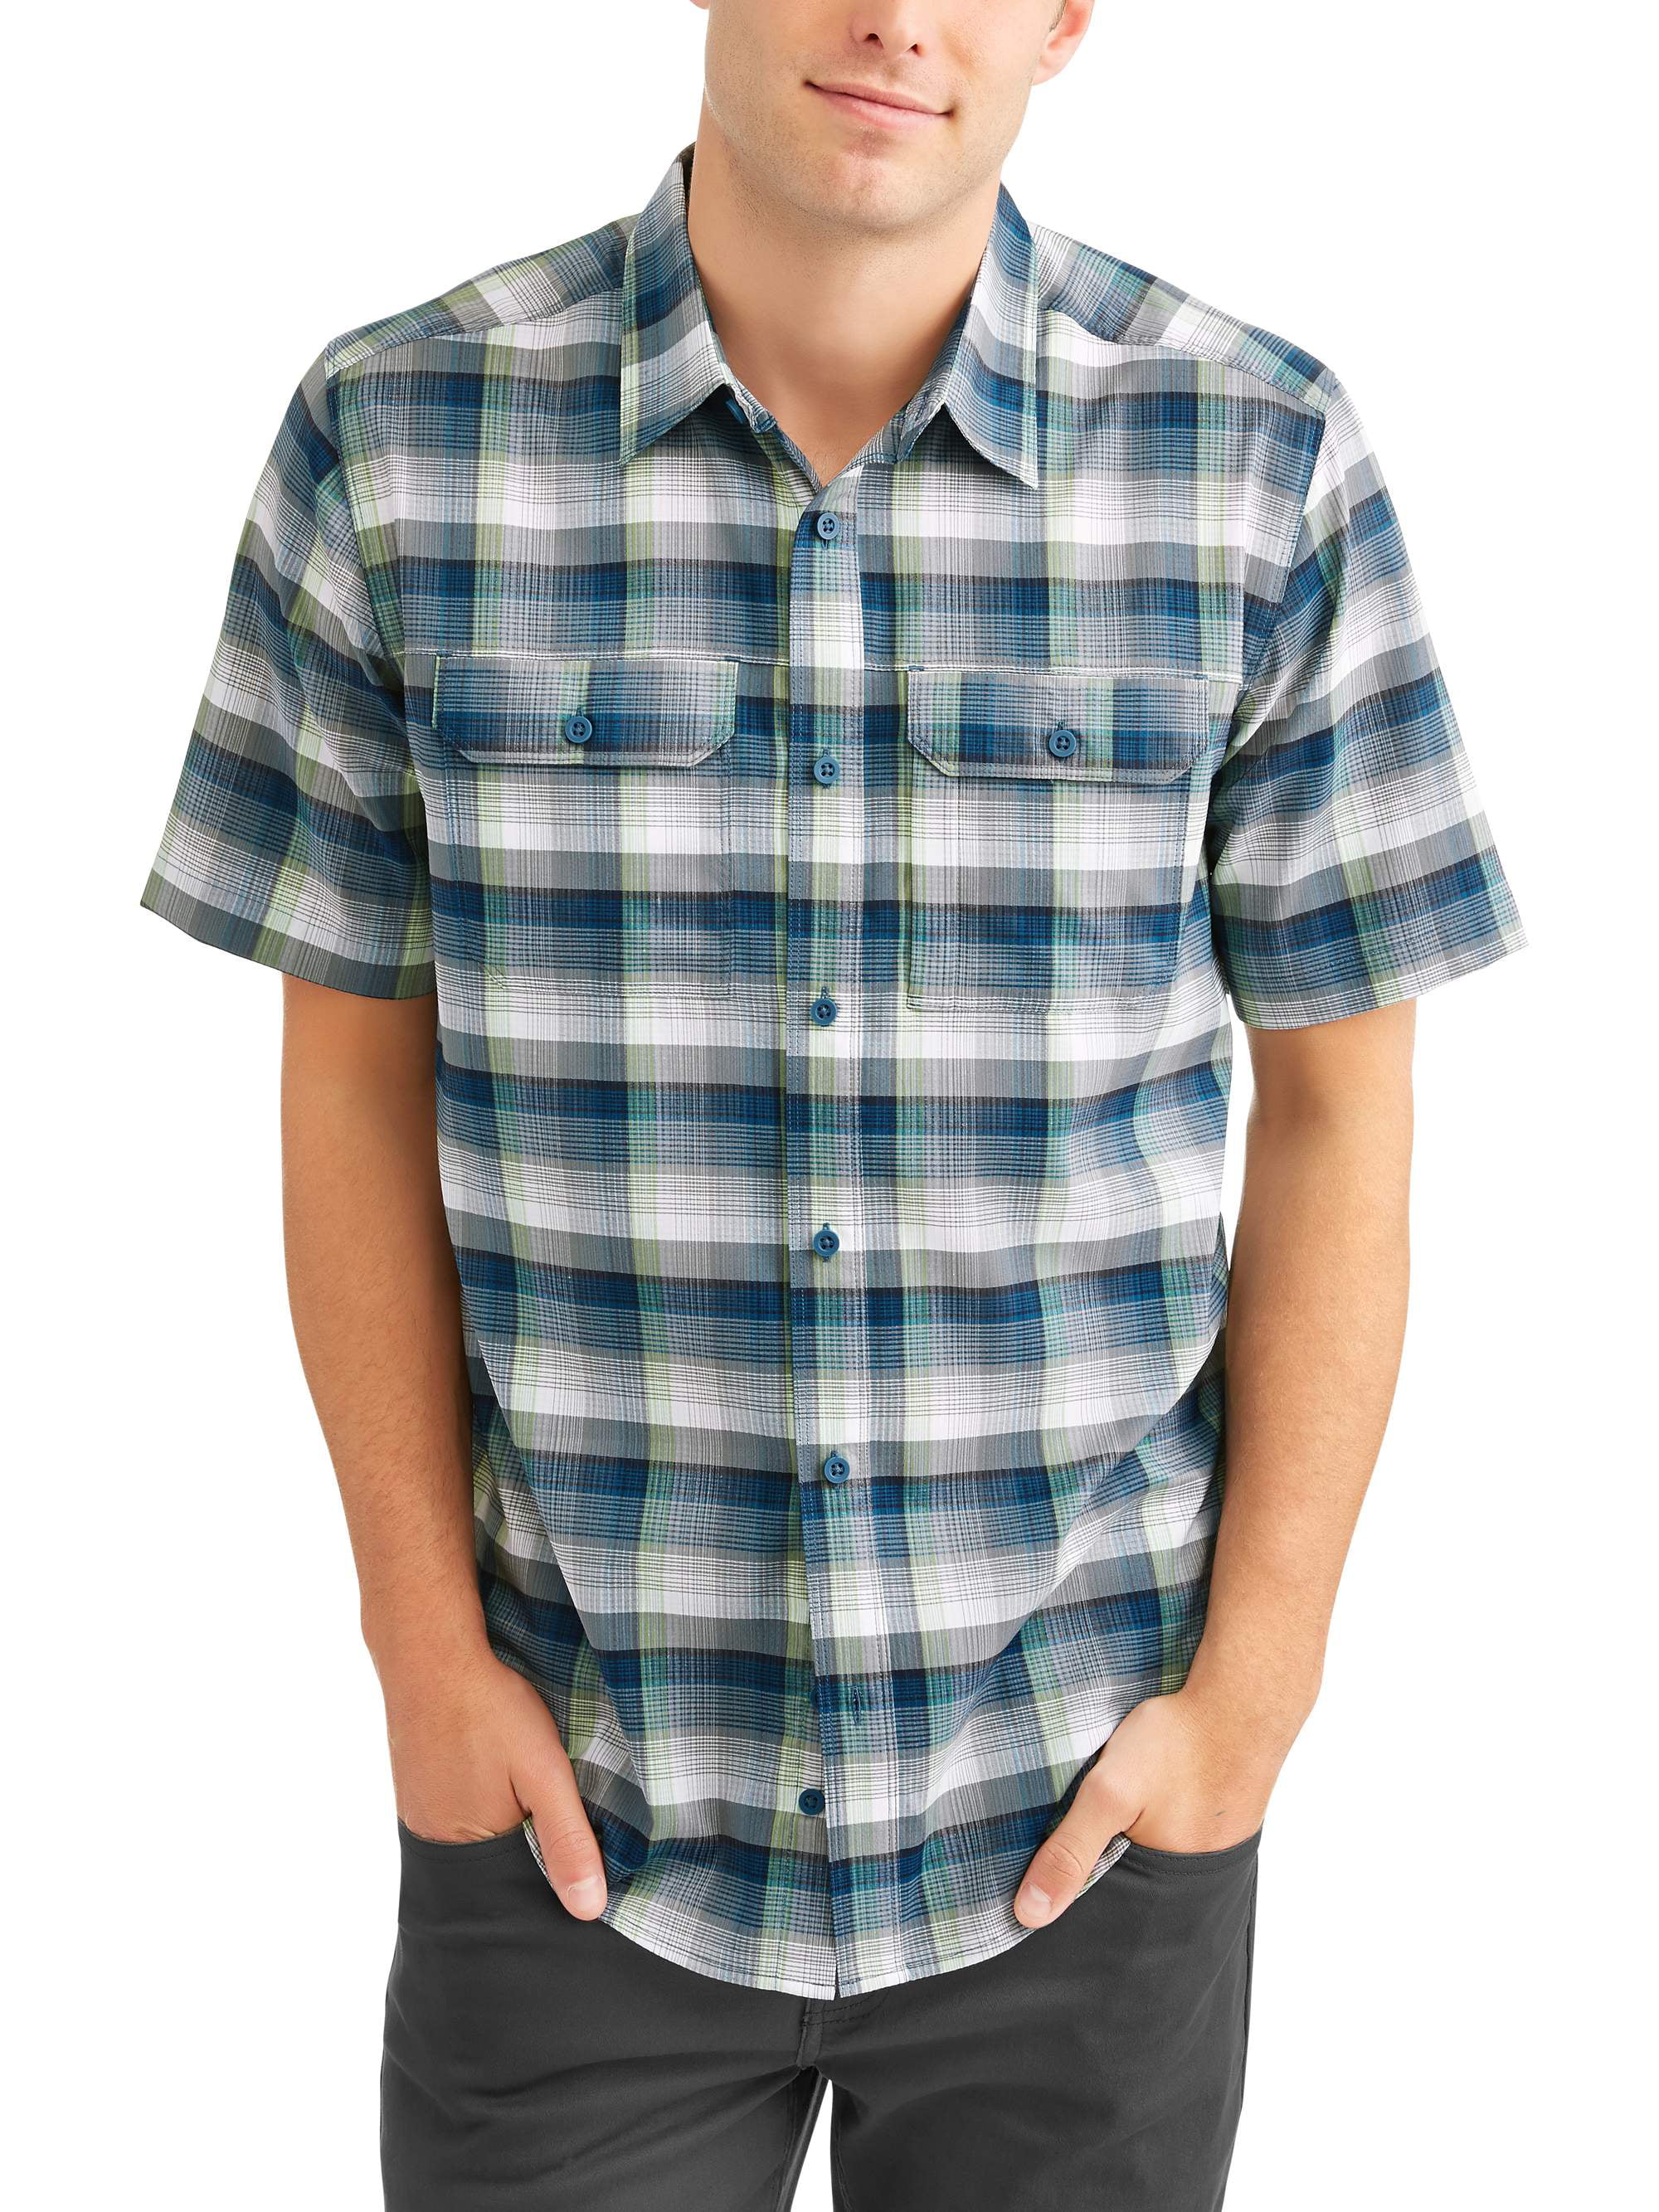 Swiss Tech Men's Short Sleeve Outdoor Woven Shirt - Walmart.com